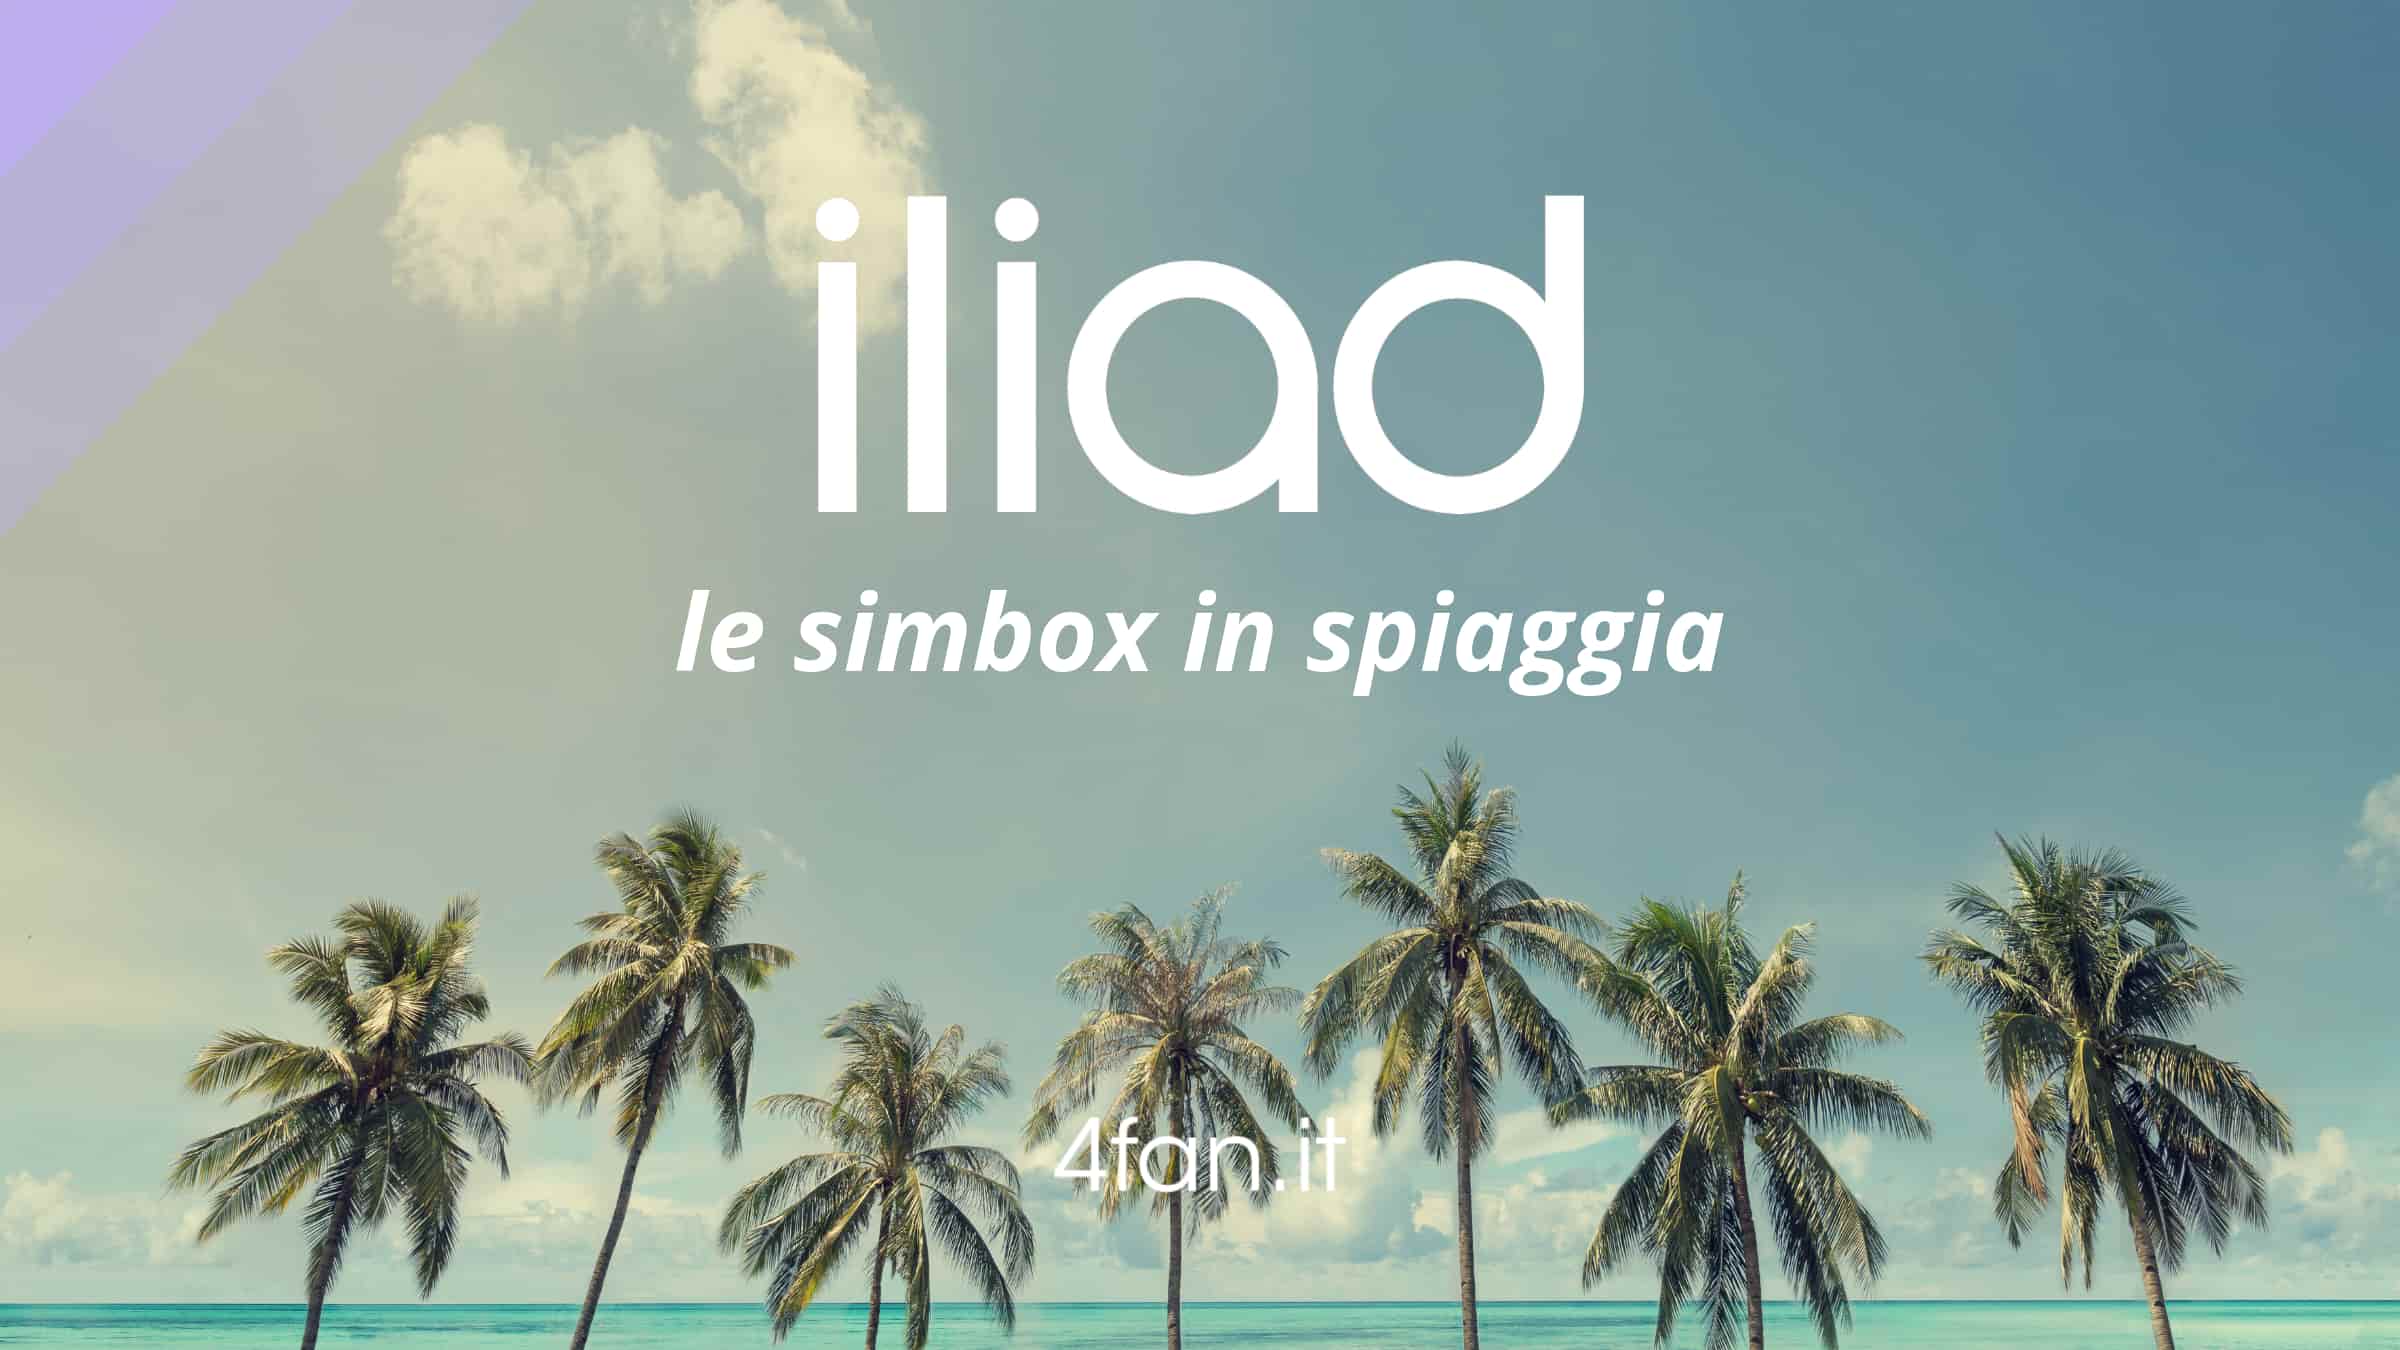 Simbox Iliad in spiaggia